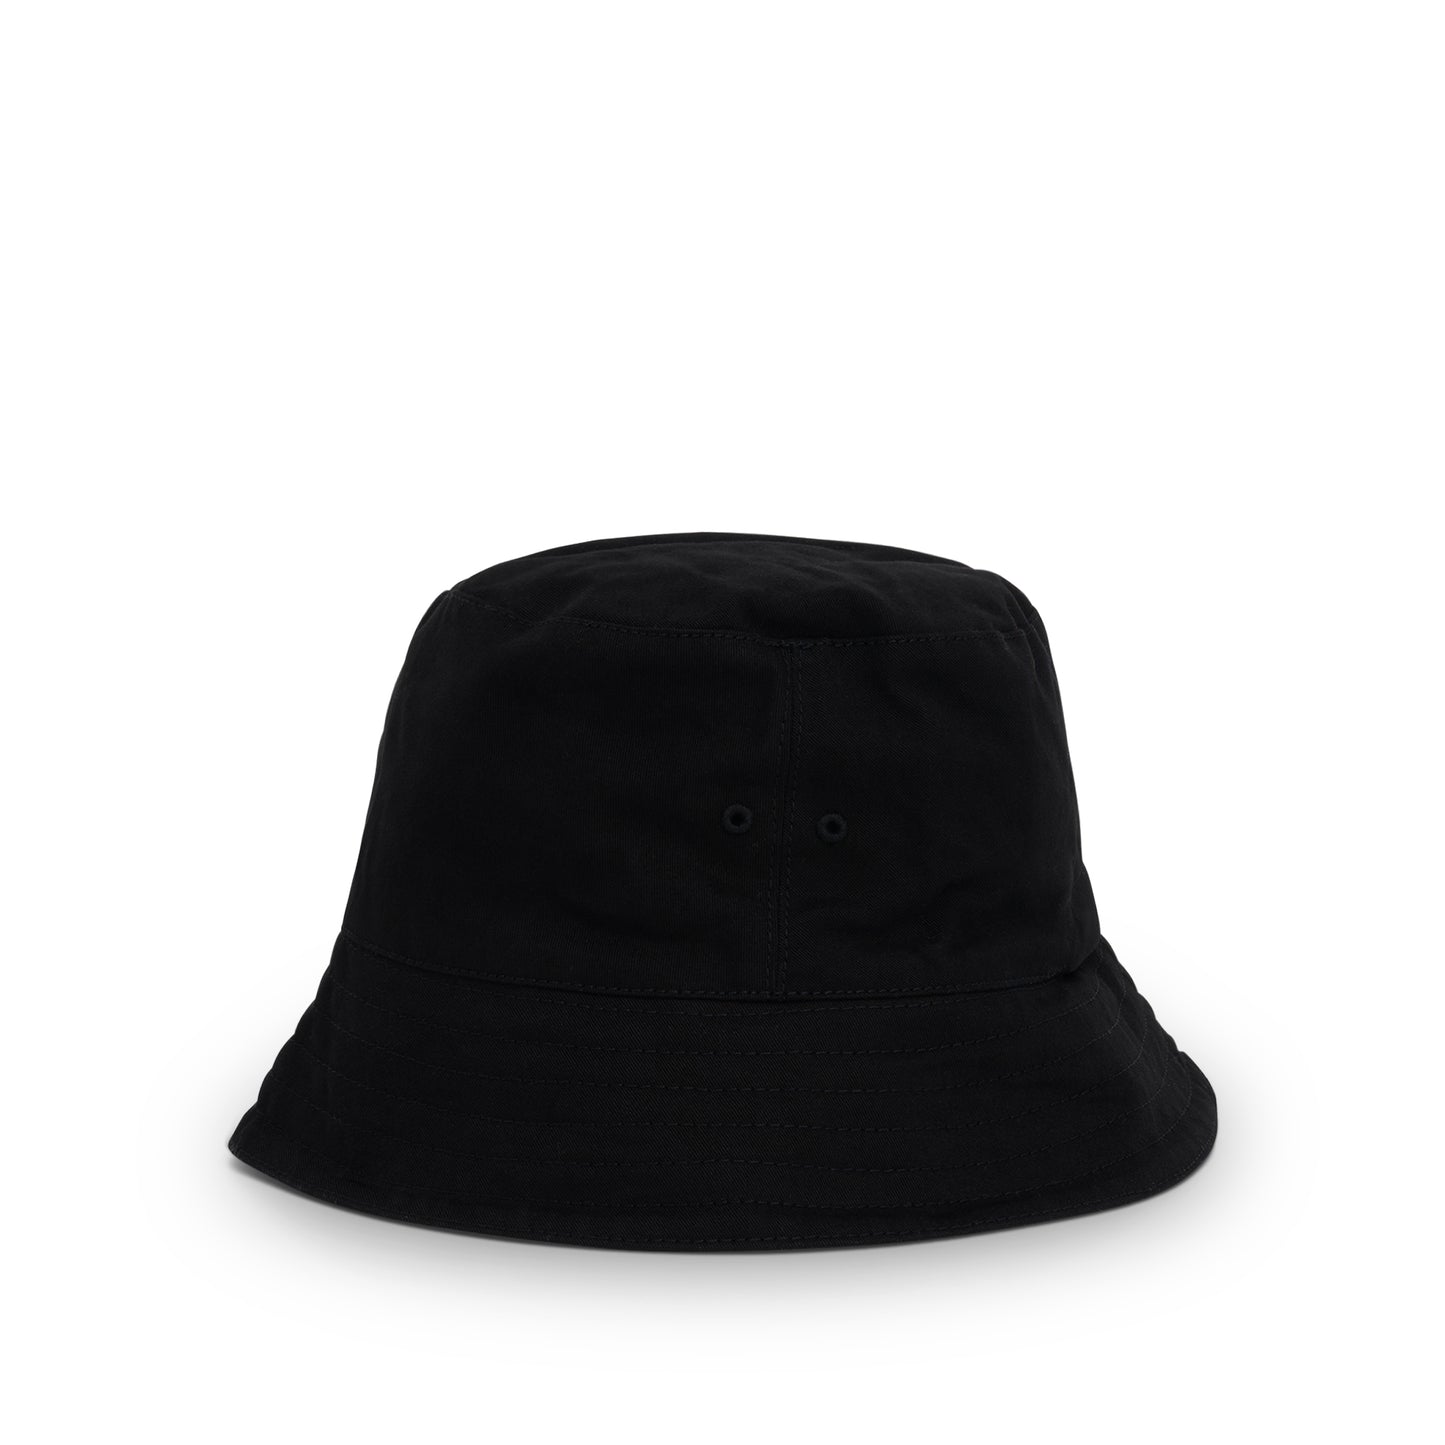 Arrow Motif Bucket Hat in Black/White